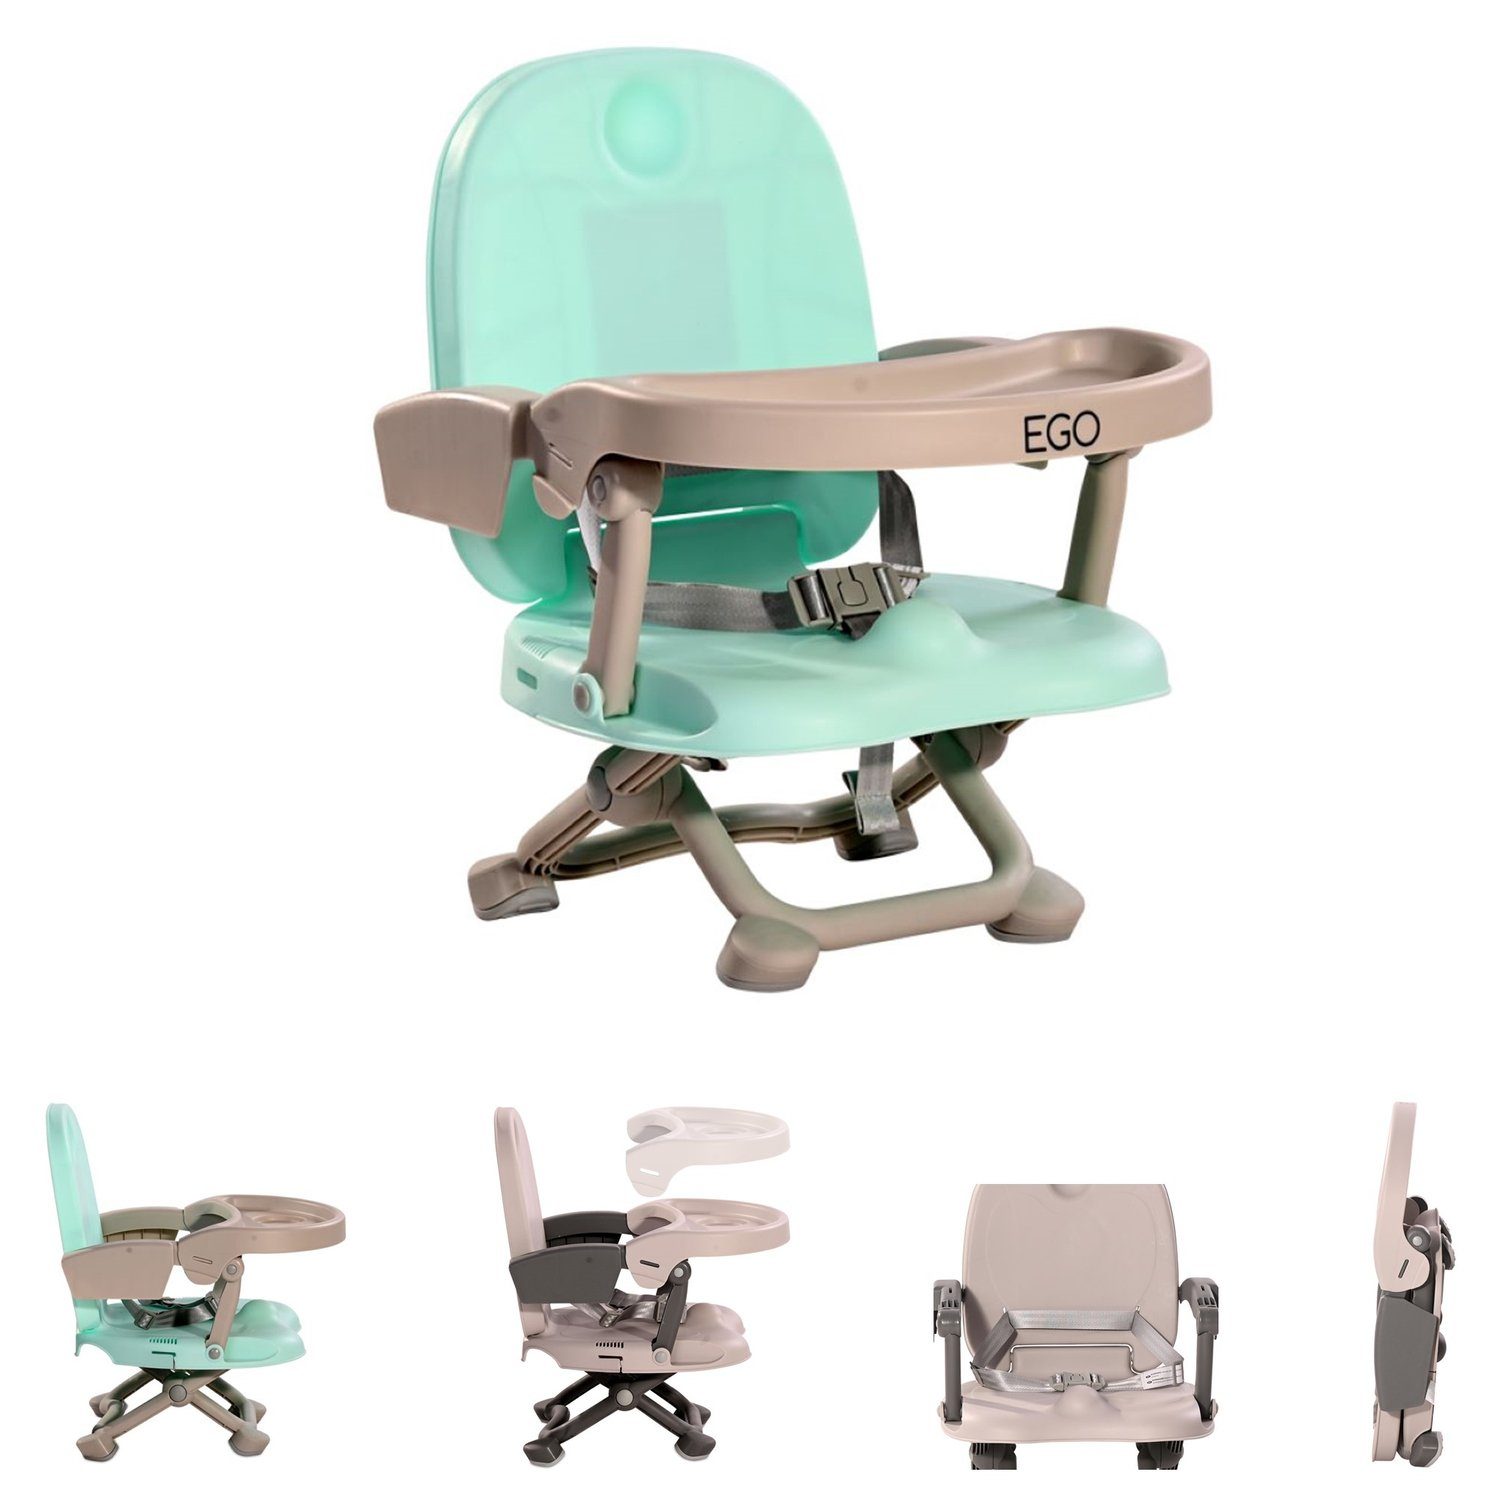 Boostersitz Tisch 2 grün Kinderstuhl Sitzerhöhung Ego in Lorelli klappbar abnehmbar 1, Stuhl